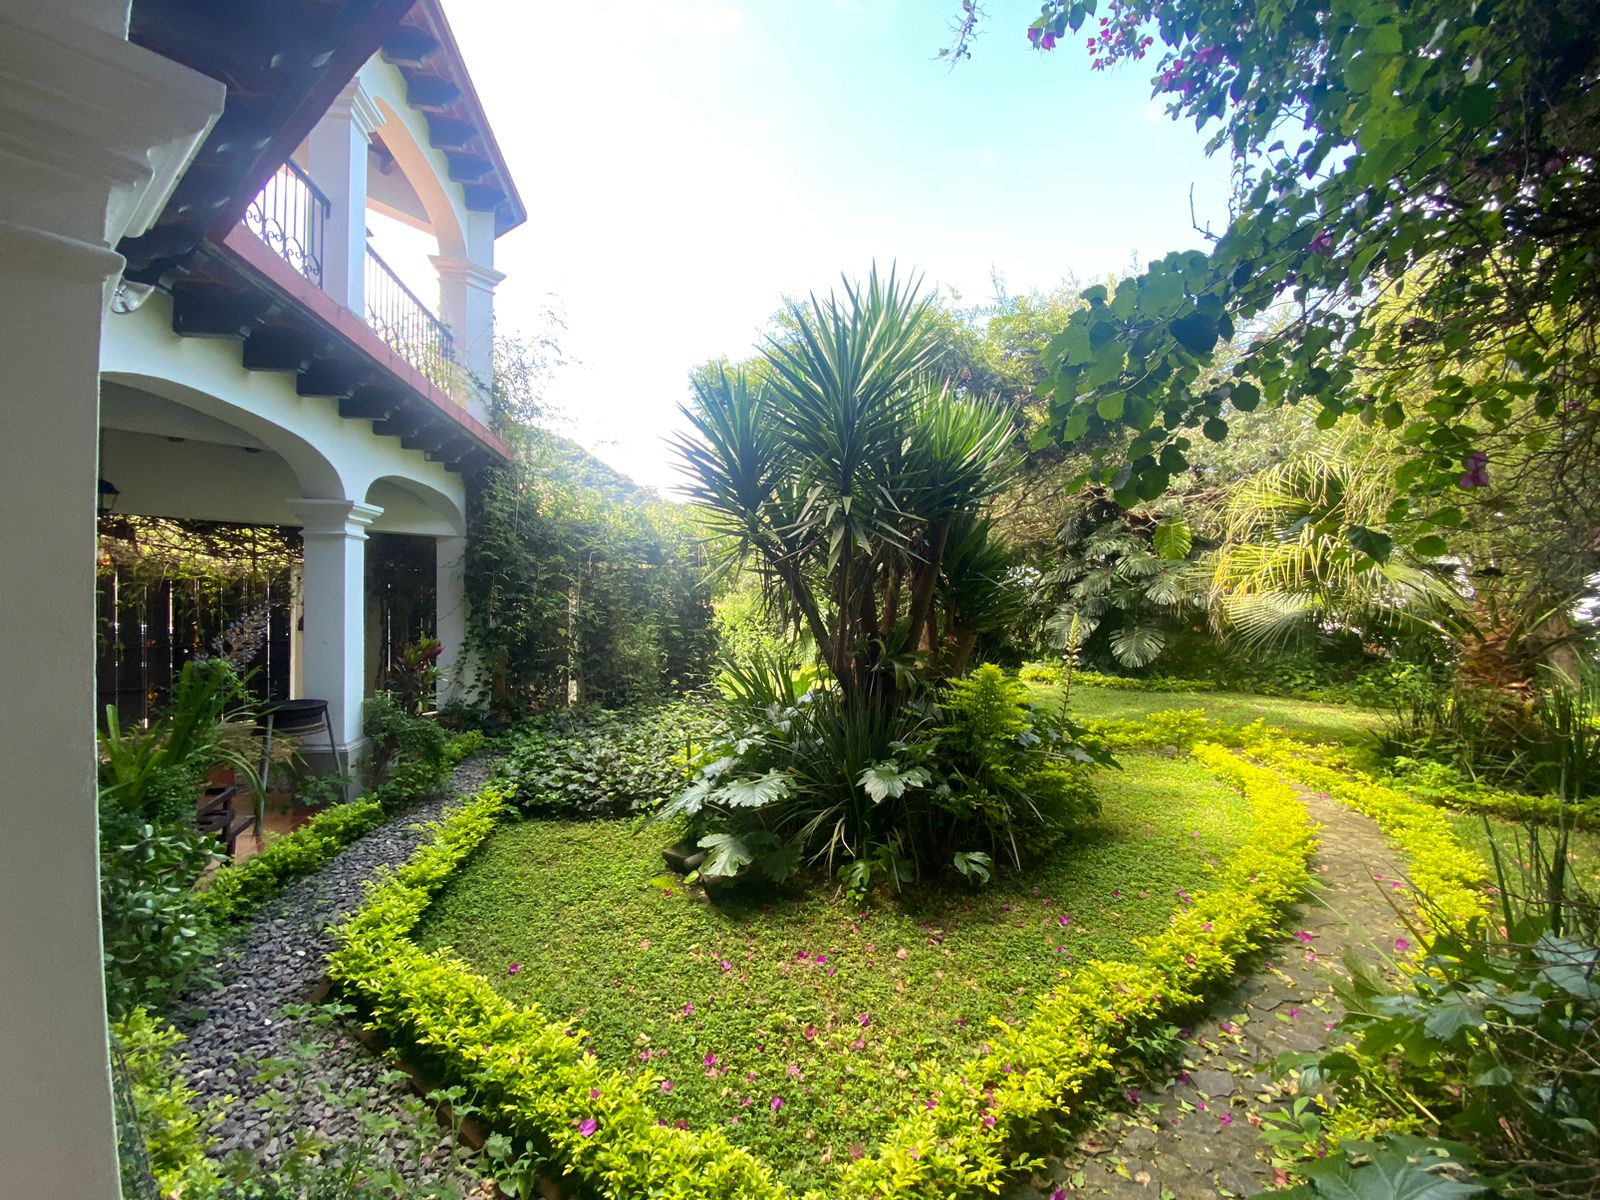 Casa en renta en el centro de #AntiguaGuatemala para hotel, ONG, Airbnb o restaurante.